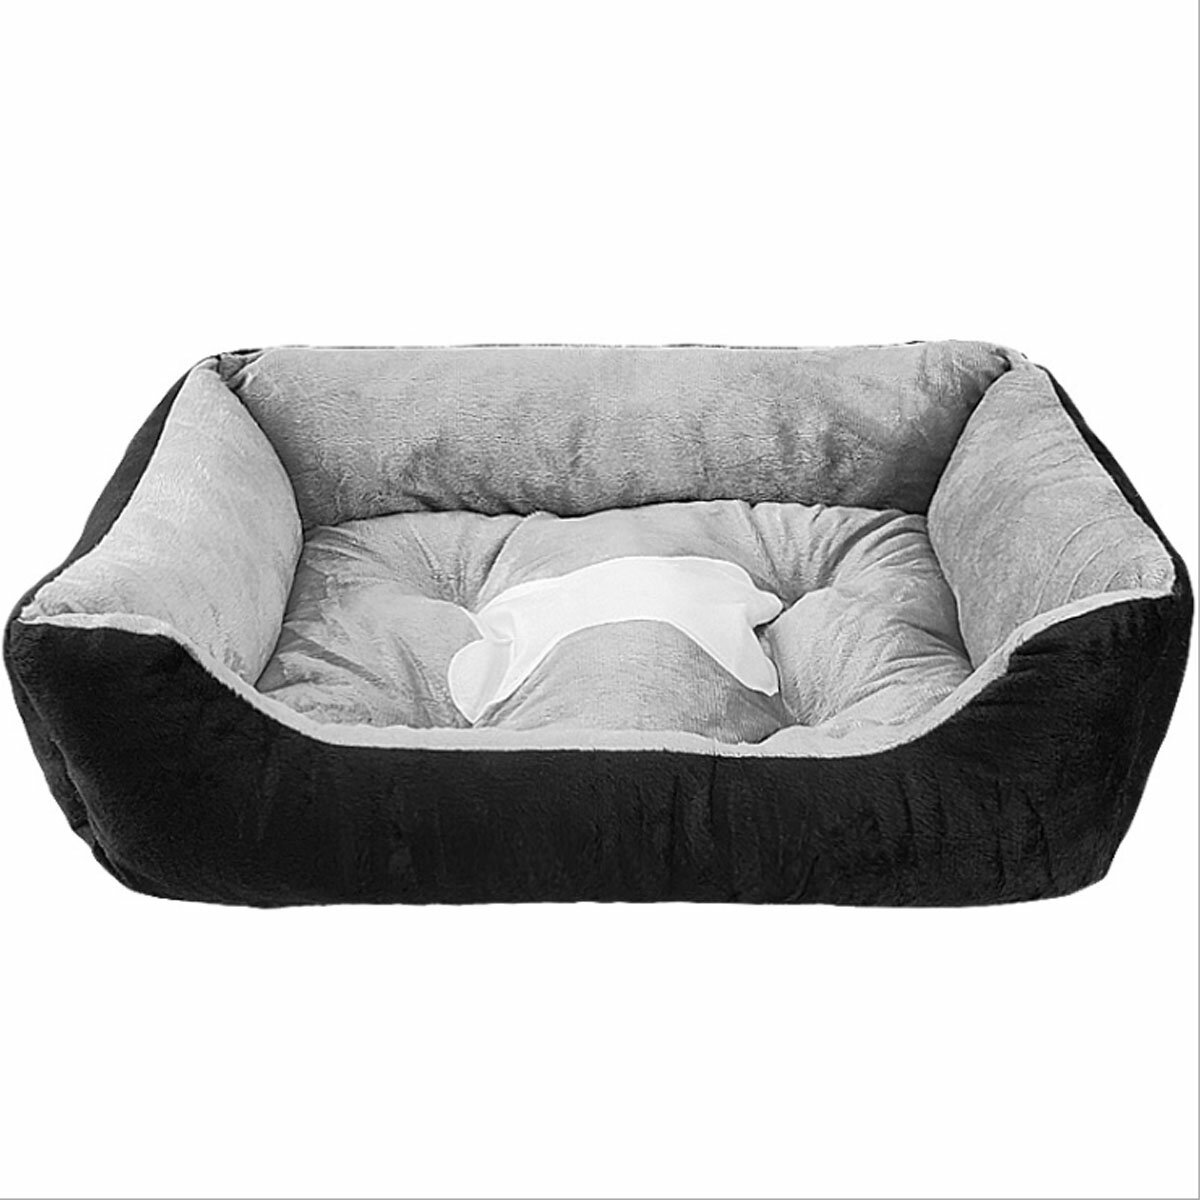 Dog Beds Pet Cat Calming Mattress Mat Cushion Soft Pad Warm Sofa Blanket Pet Supplies Puppy Sleeping